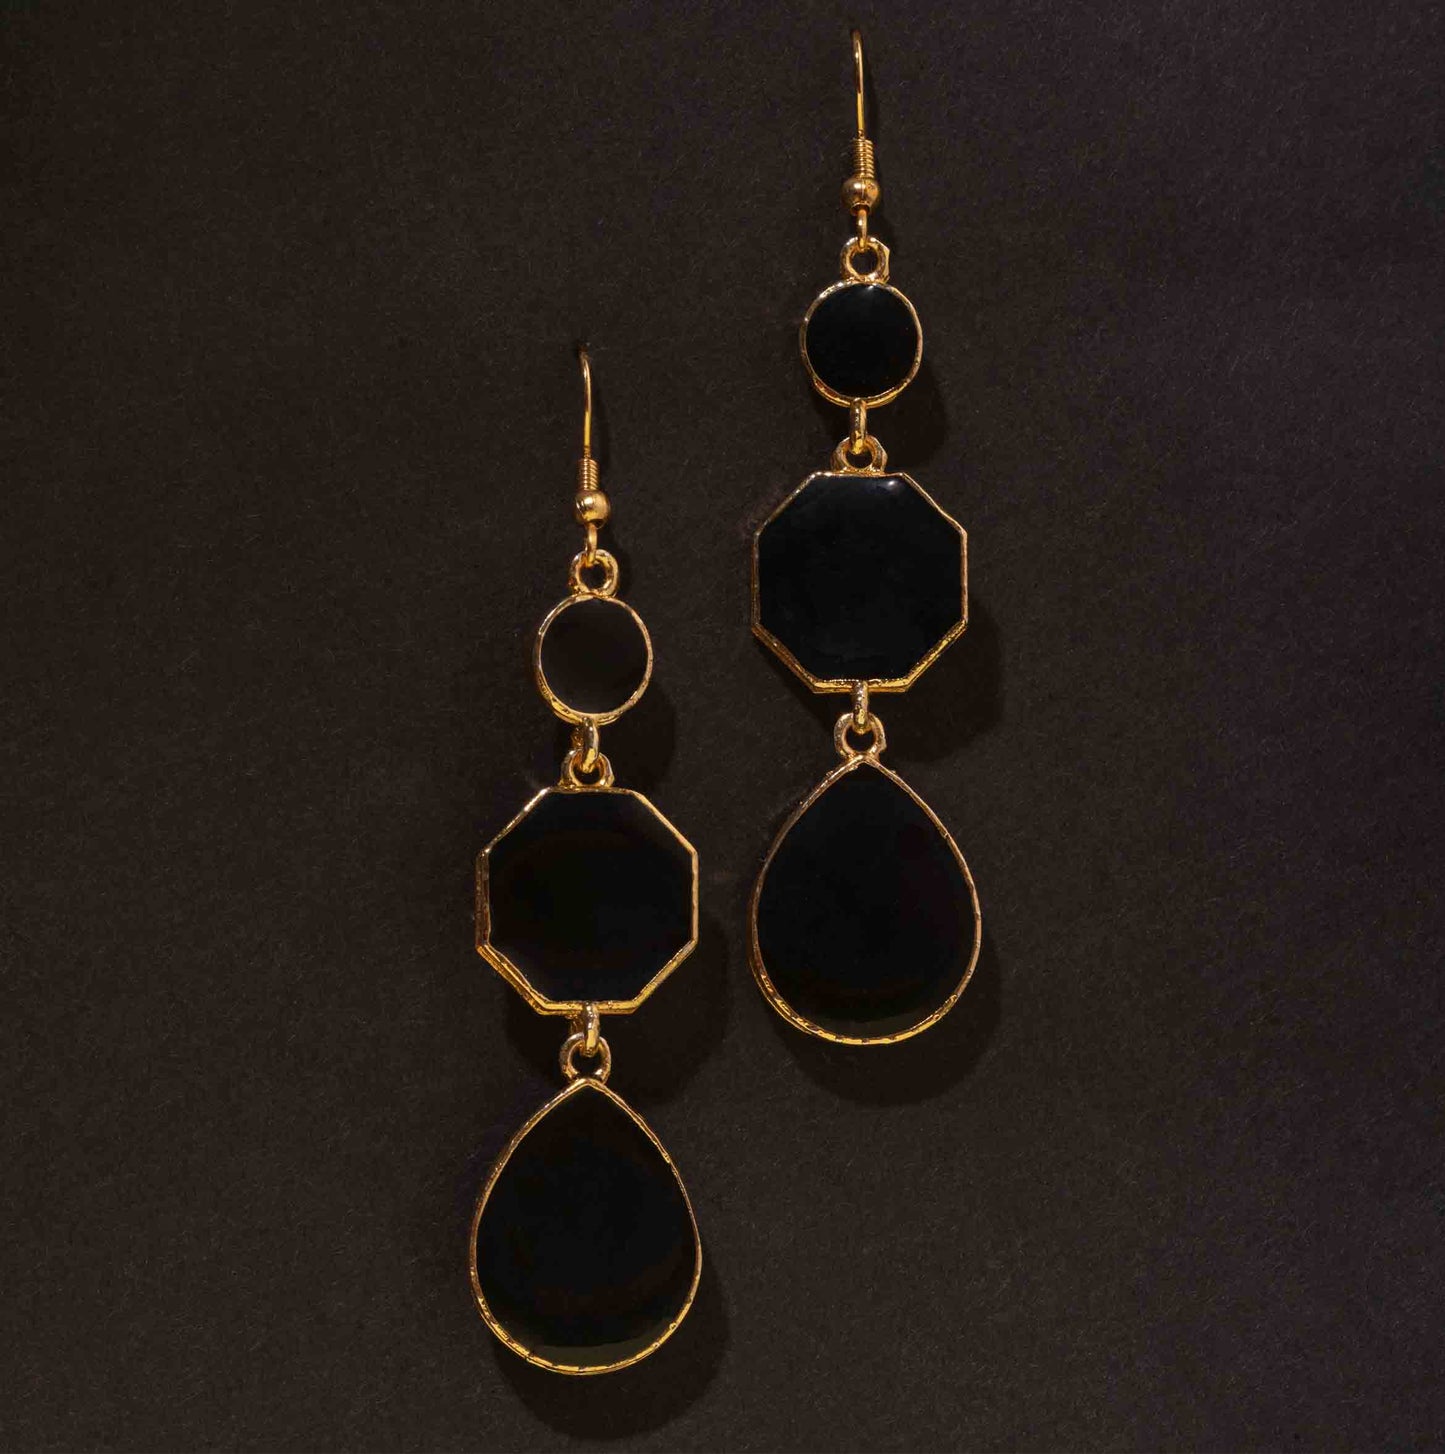 Moonstruck Dangle Drop Earrings (Black) - www.MoonstruckINC.com